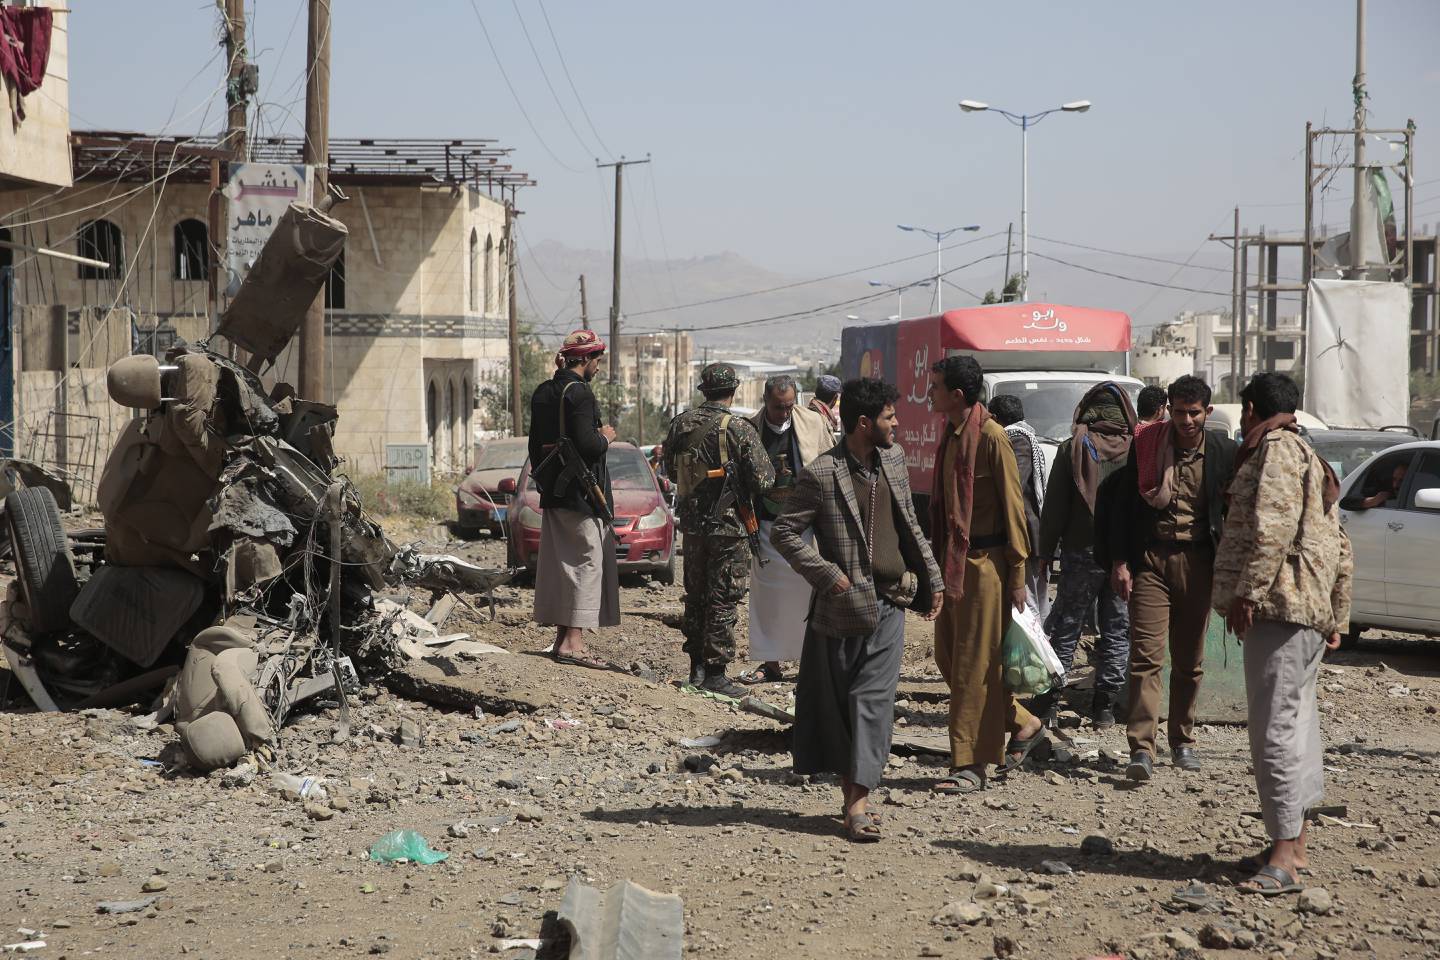 Det som er igjen etter et luftangrep i Sana, Jemen, blir inspisert av lokalbefolkningen. Krigen i Jemen har ført til et stort nødhjelpsbehov, og IRC mener situasjonen ikke ser ut til å bedre seg. Foto: Hani Mohammed / AP / NTB